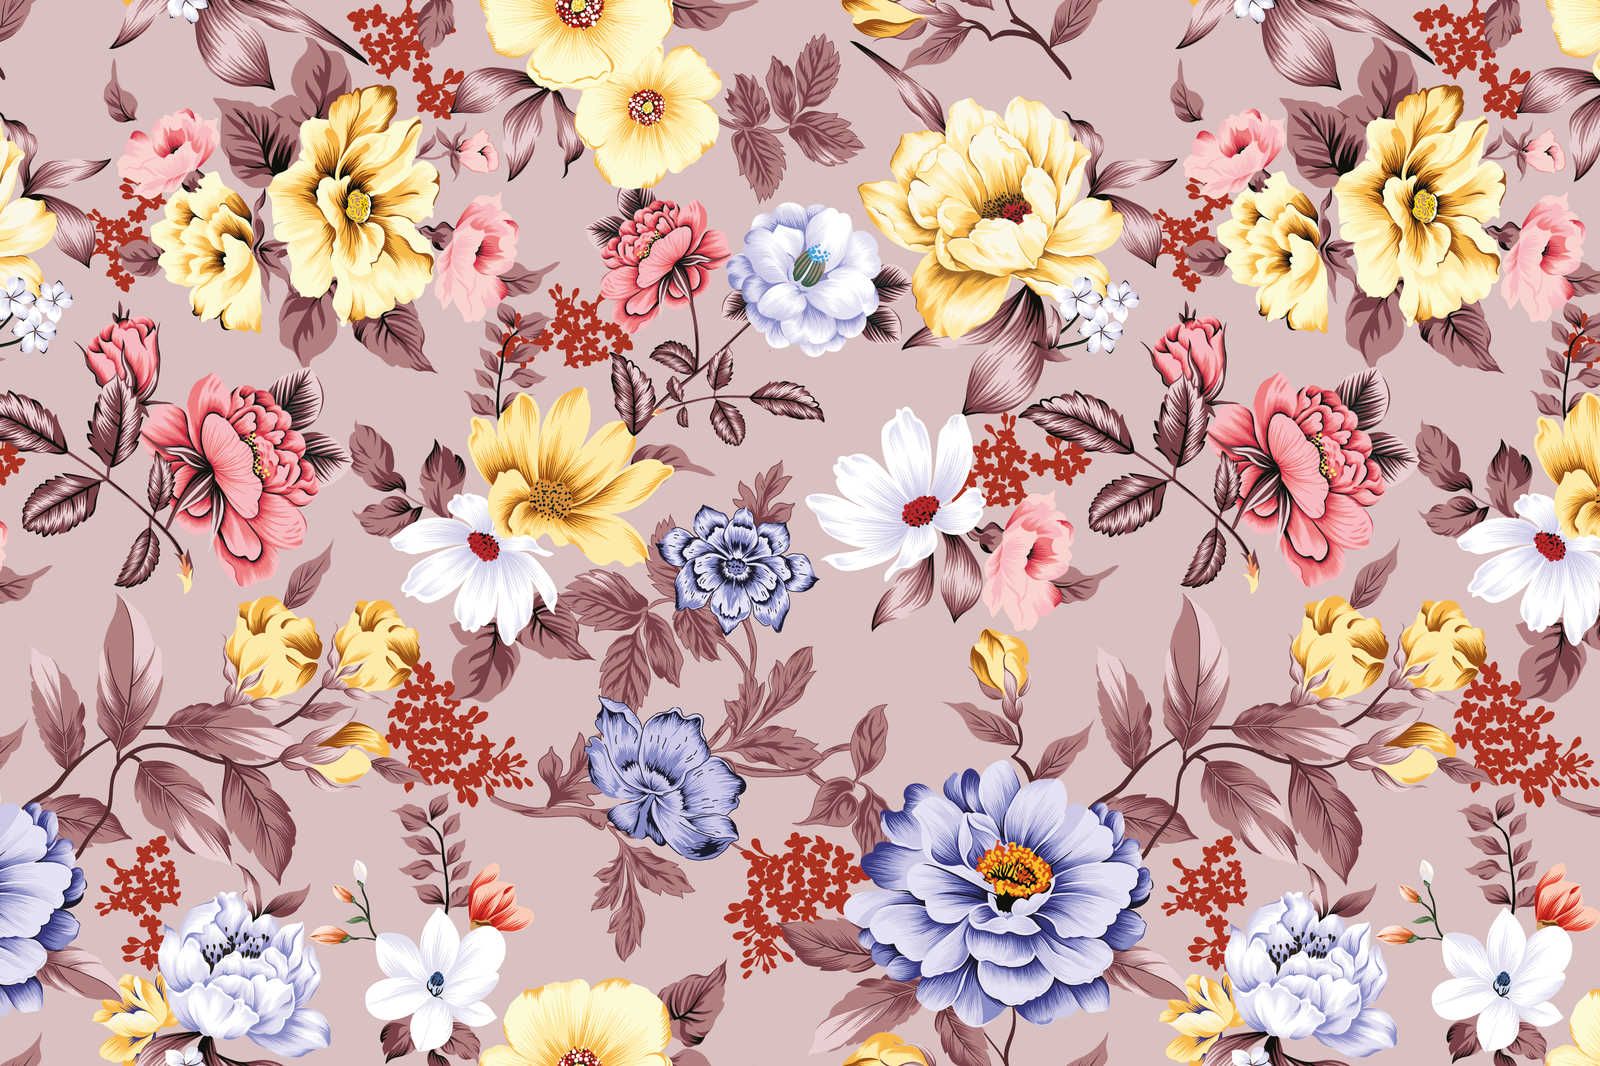             Leinwand floral mit Blüten und Blättern – 120 cm x 80 cm
        